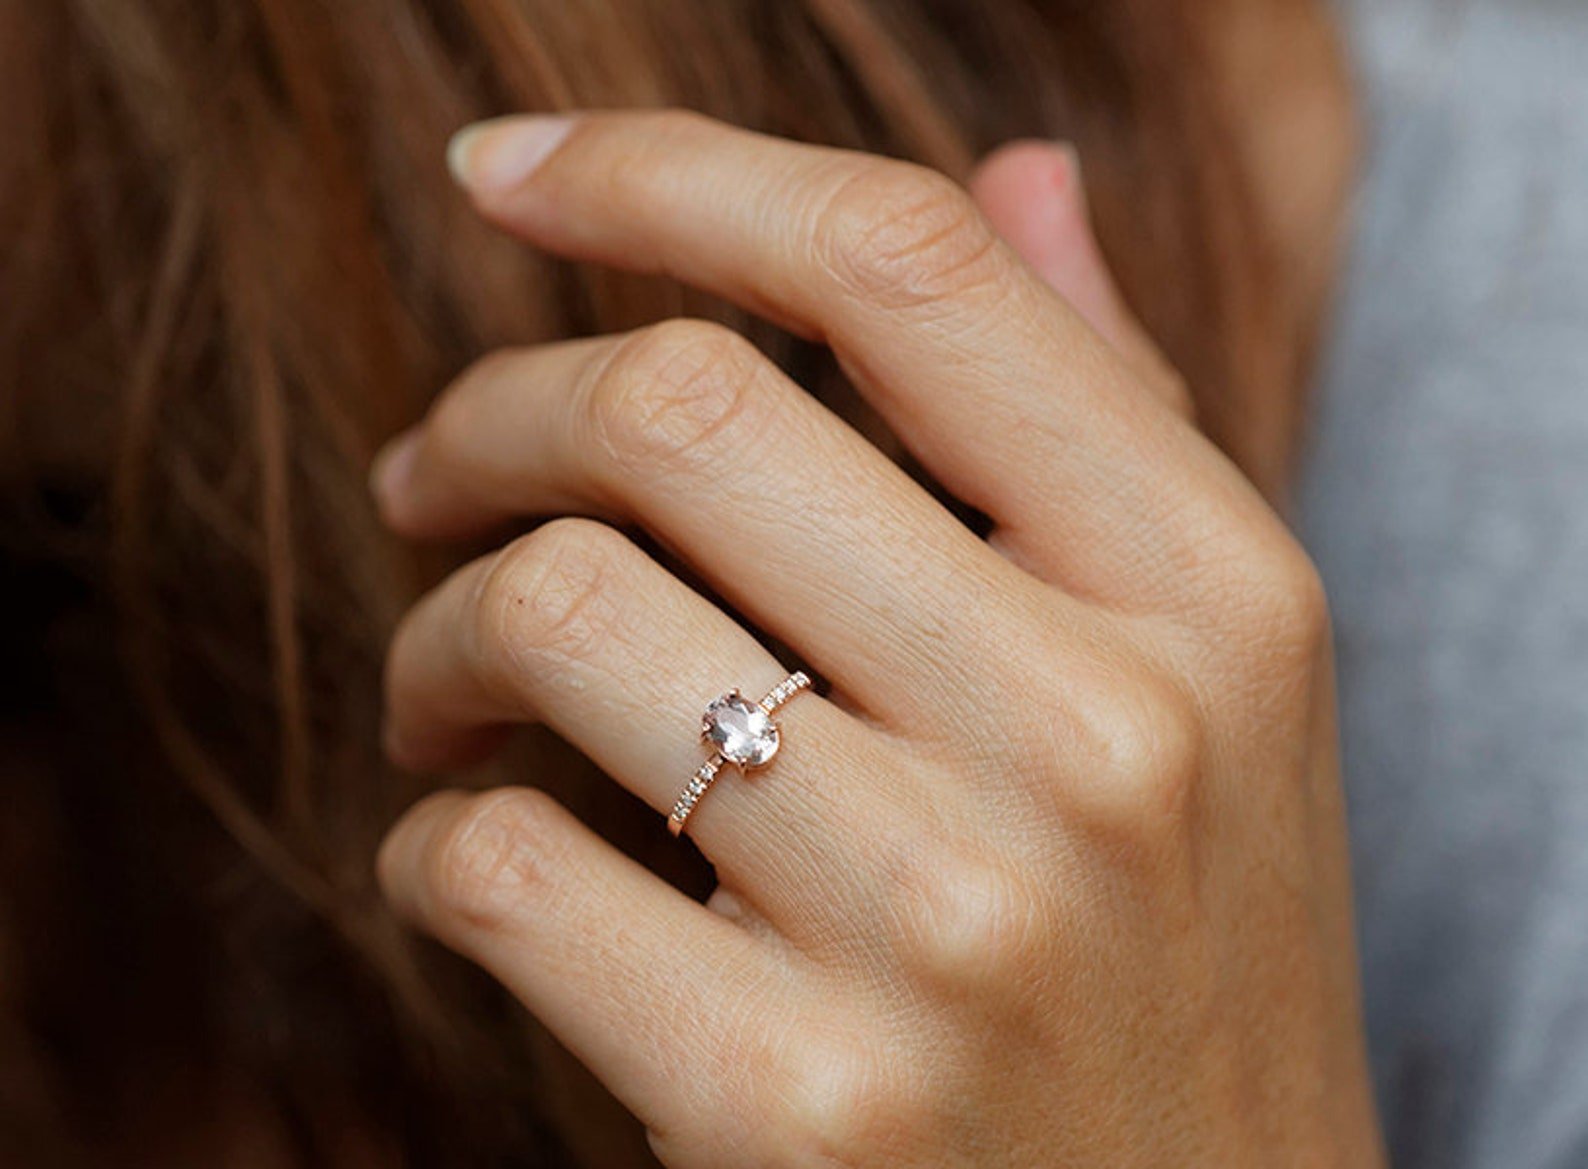 Какое кольцо дарят девушке. Кольцо с бриллиантом на руке. Обручальное кольцо для девушки. Обручальное и помолвочное кольцо. Кольцо для предложения.